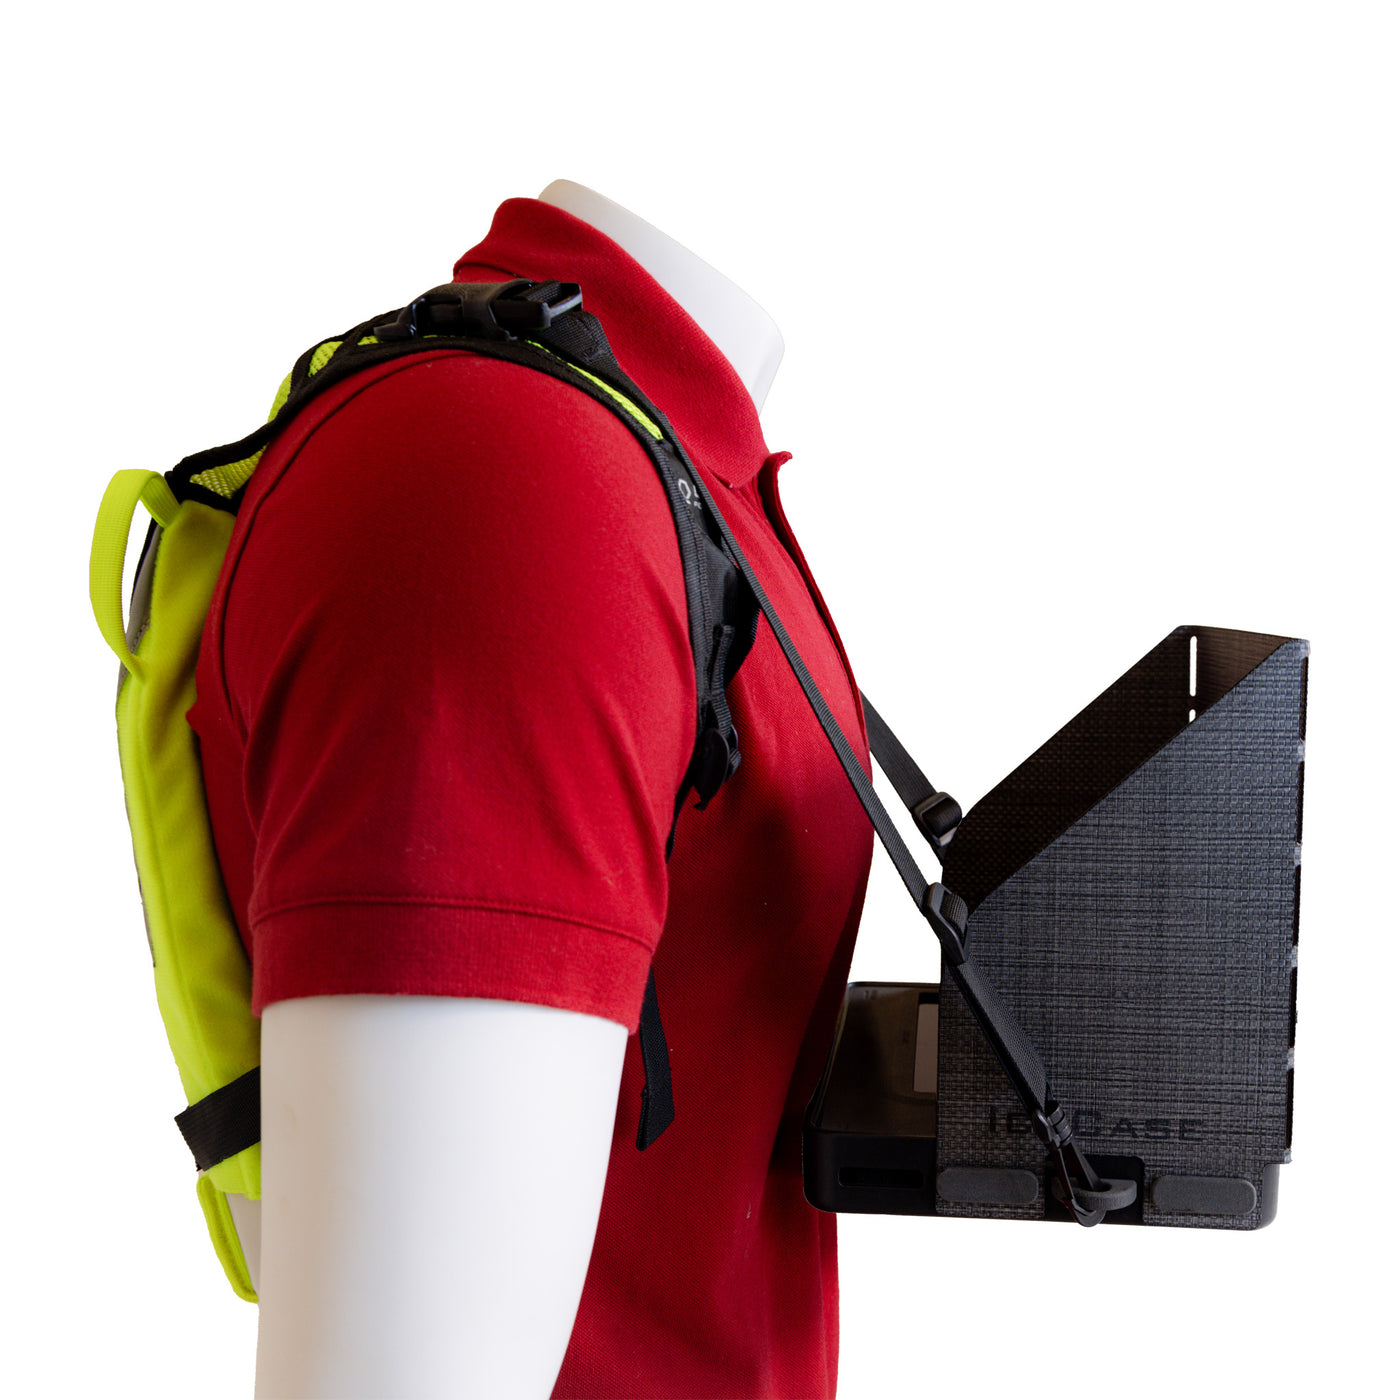 IceCase Strap Kit (für IceVest Black, IceVest Class 2 und IcePlate Hydration Backpack)